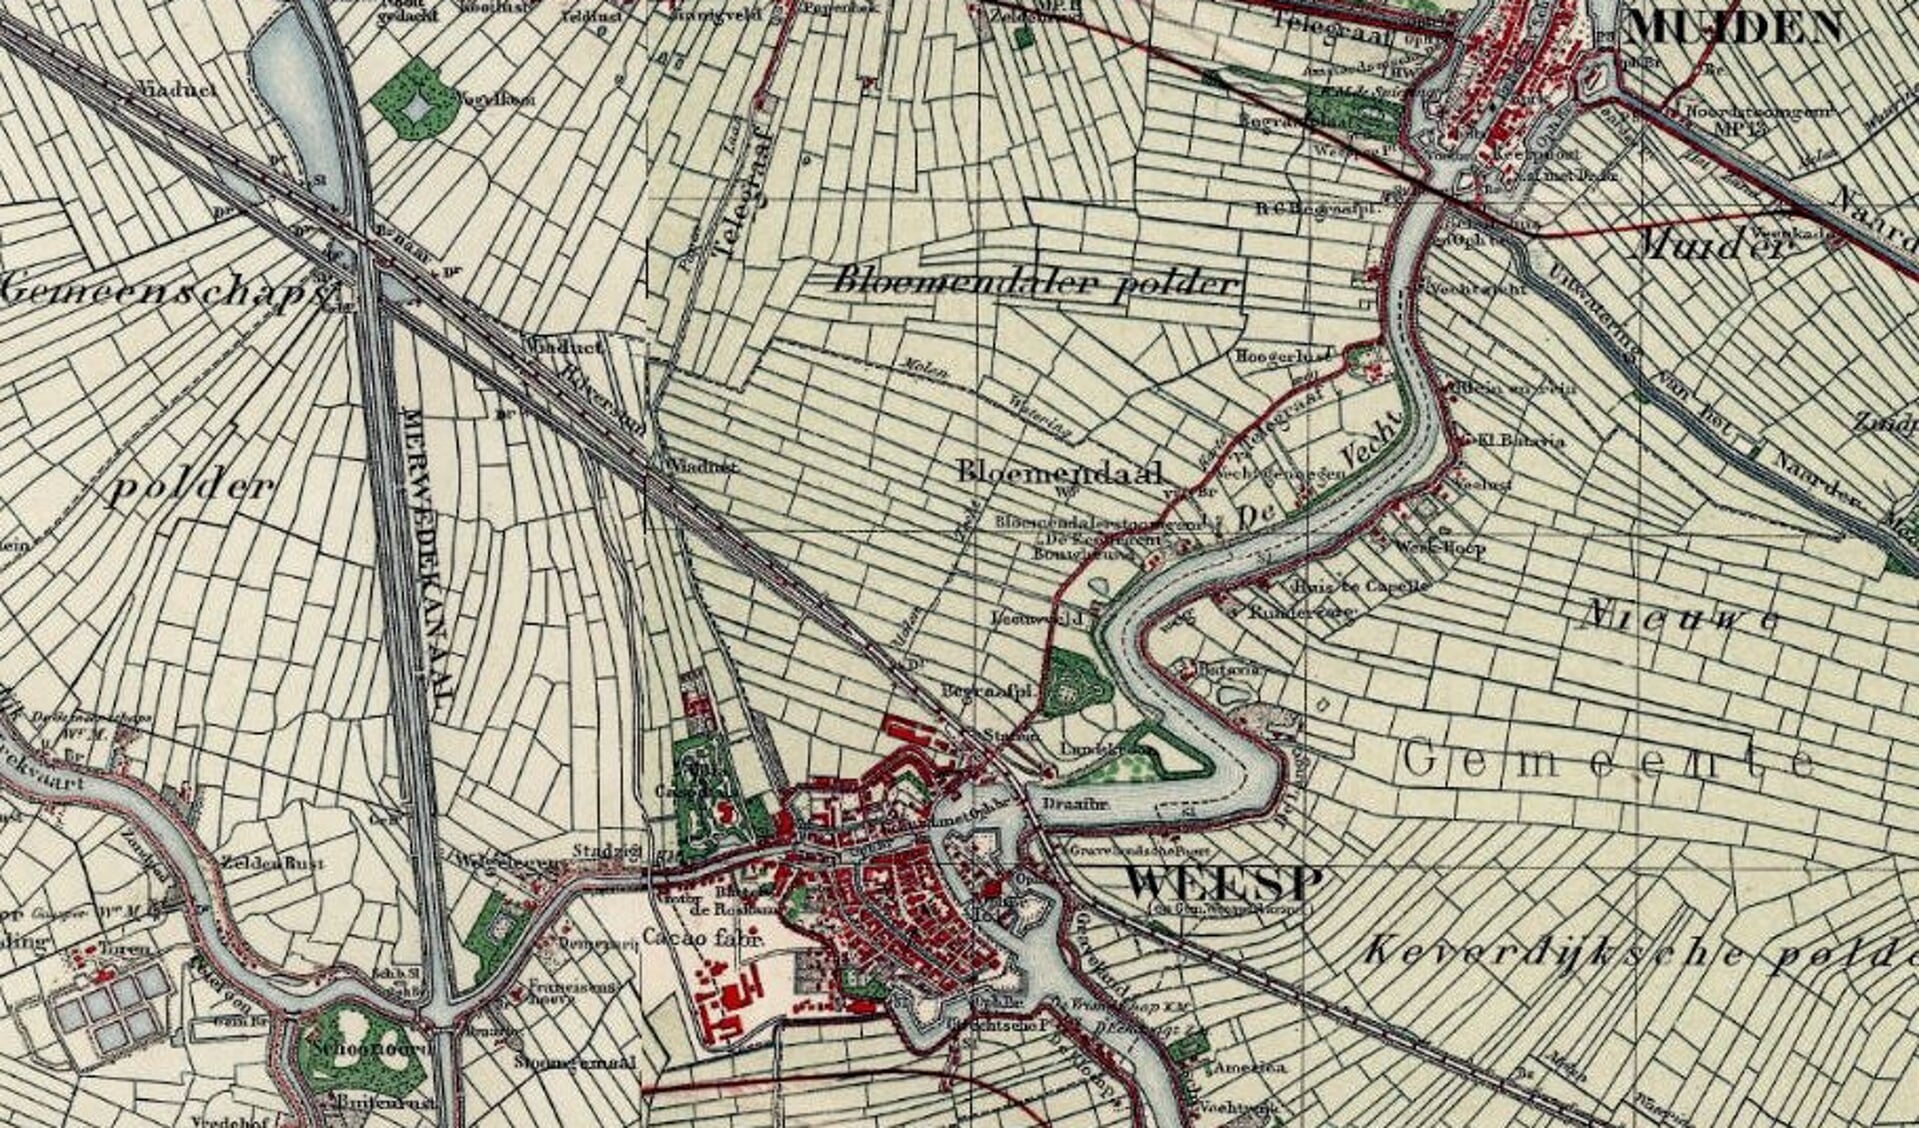 Kaart van de Bloemendalerpolder uit 1925. Duidelijk is de oude verkavelingstructuur te zien